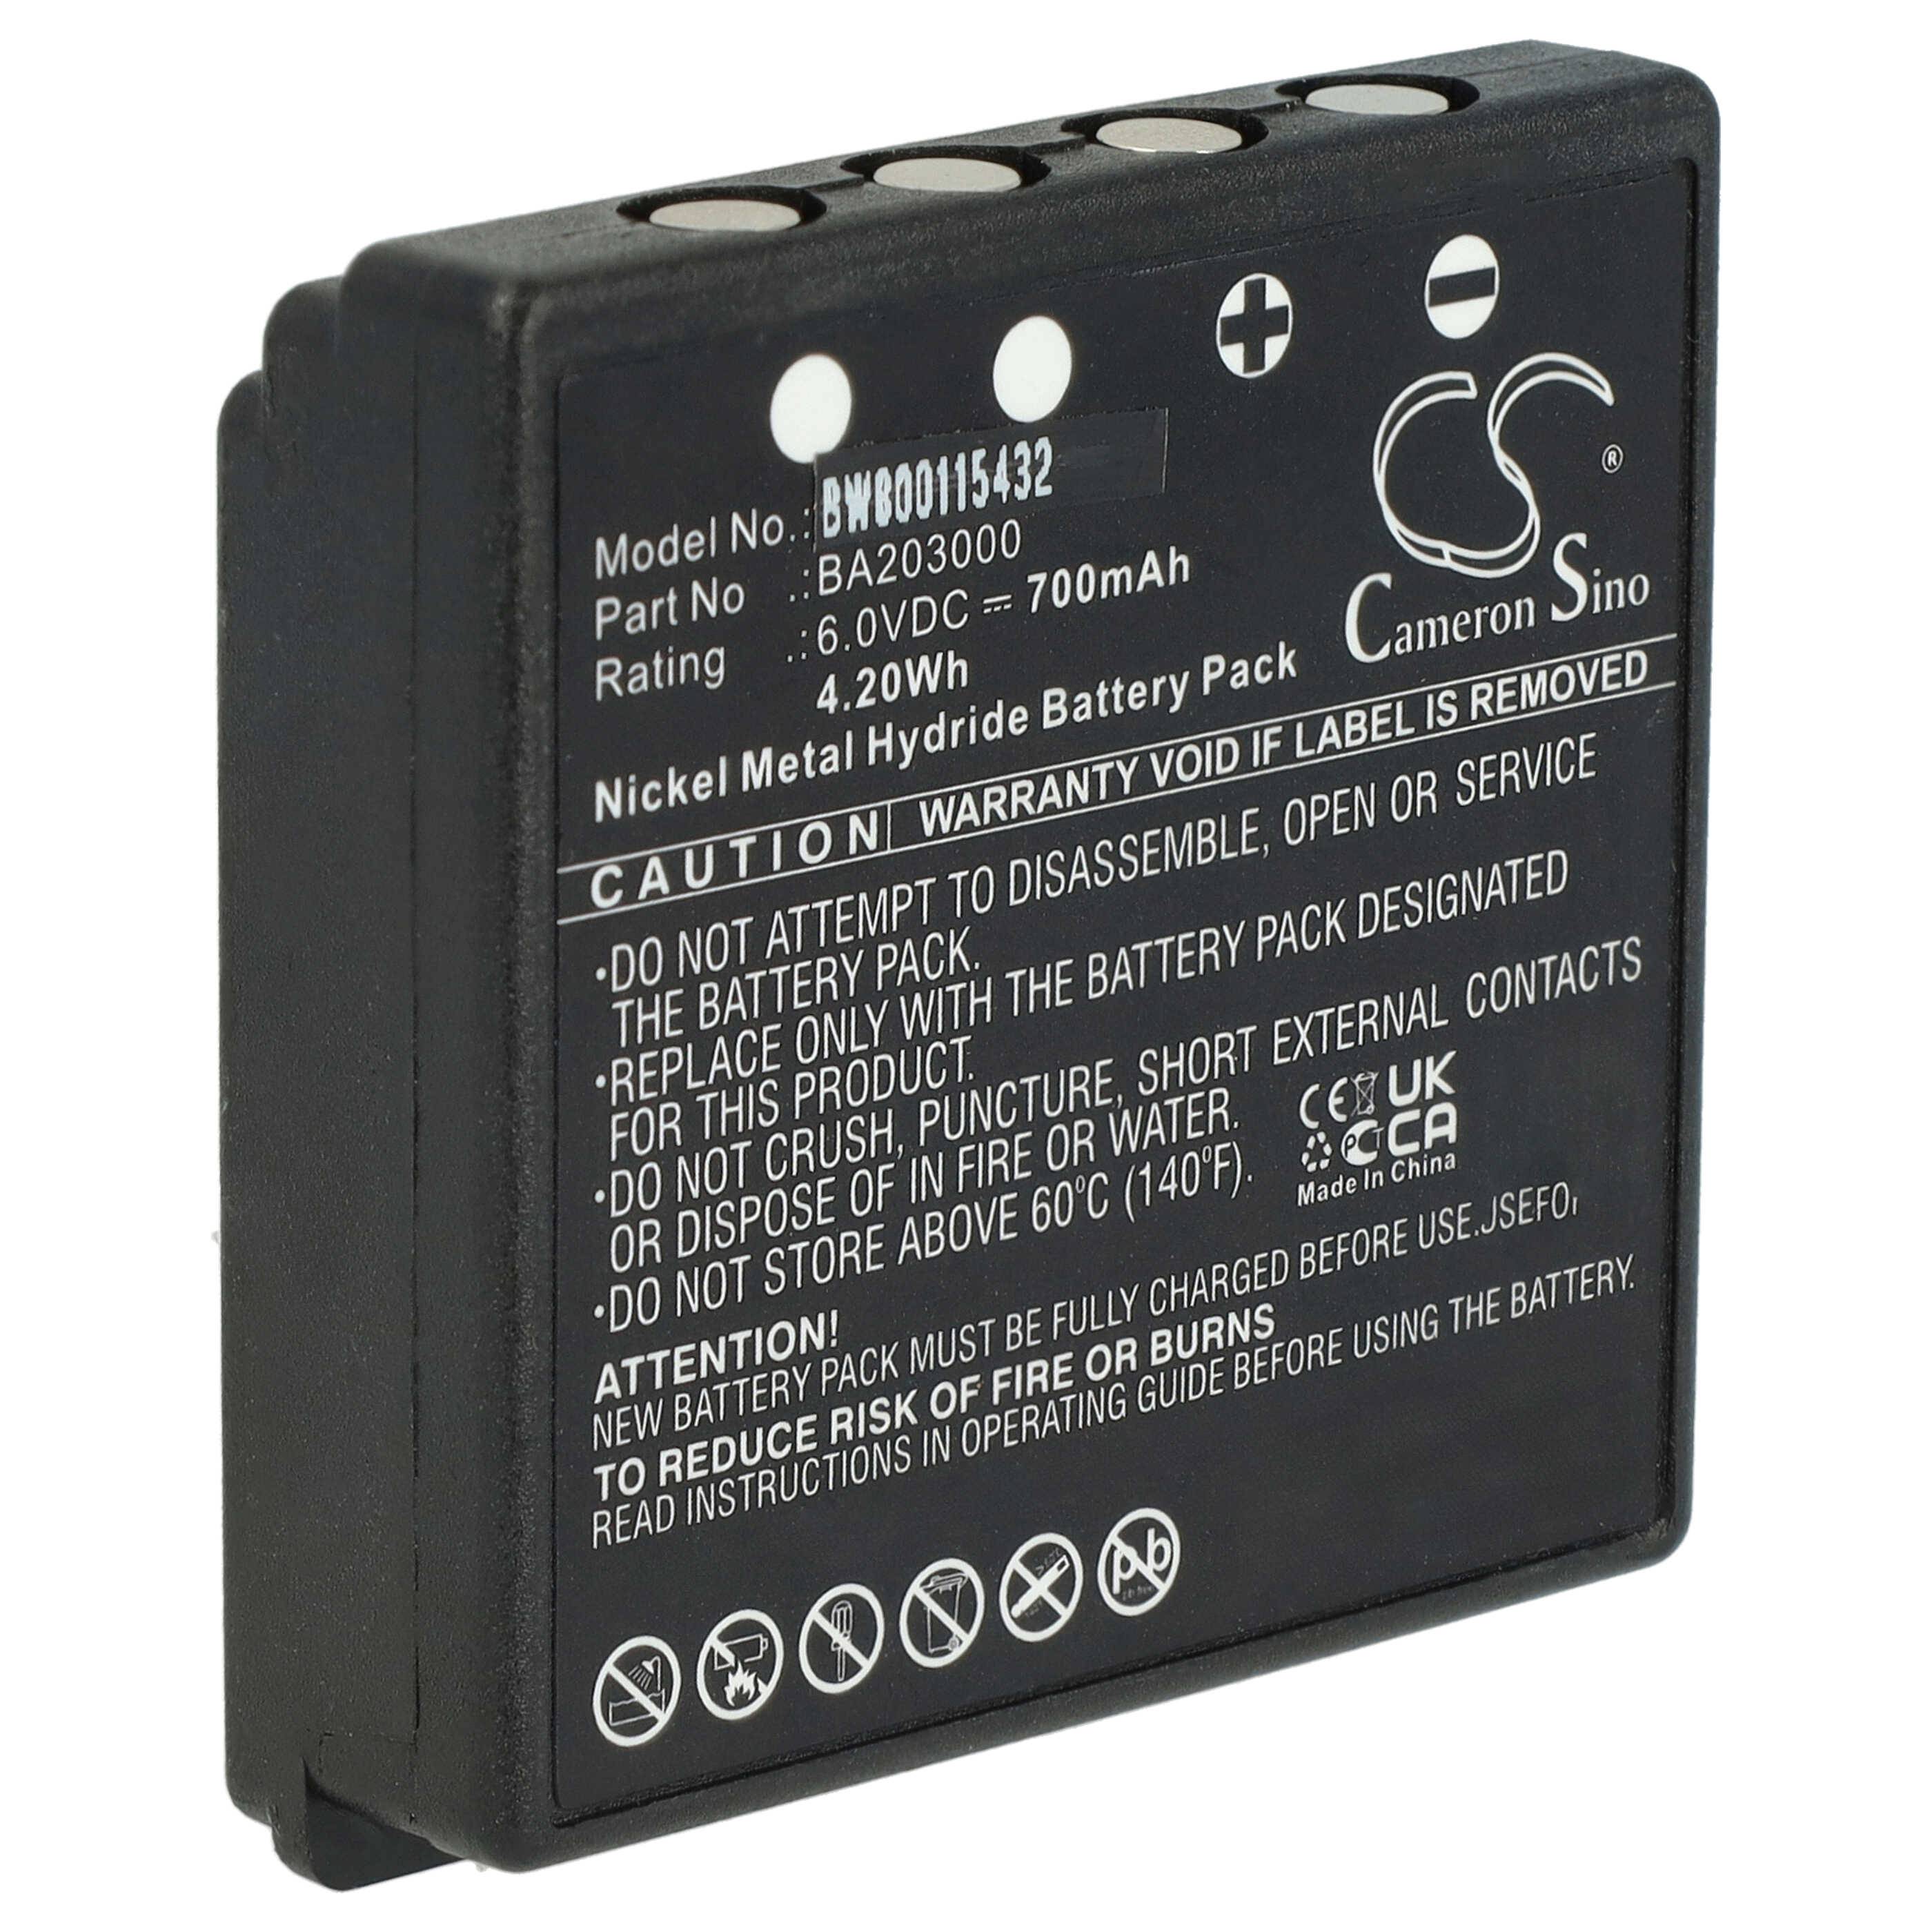 Batterie remplace HBC BA203000, BA205030, 005-01-00615 pour télécomande industrielle - 700mAh 6V NiMH